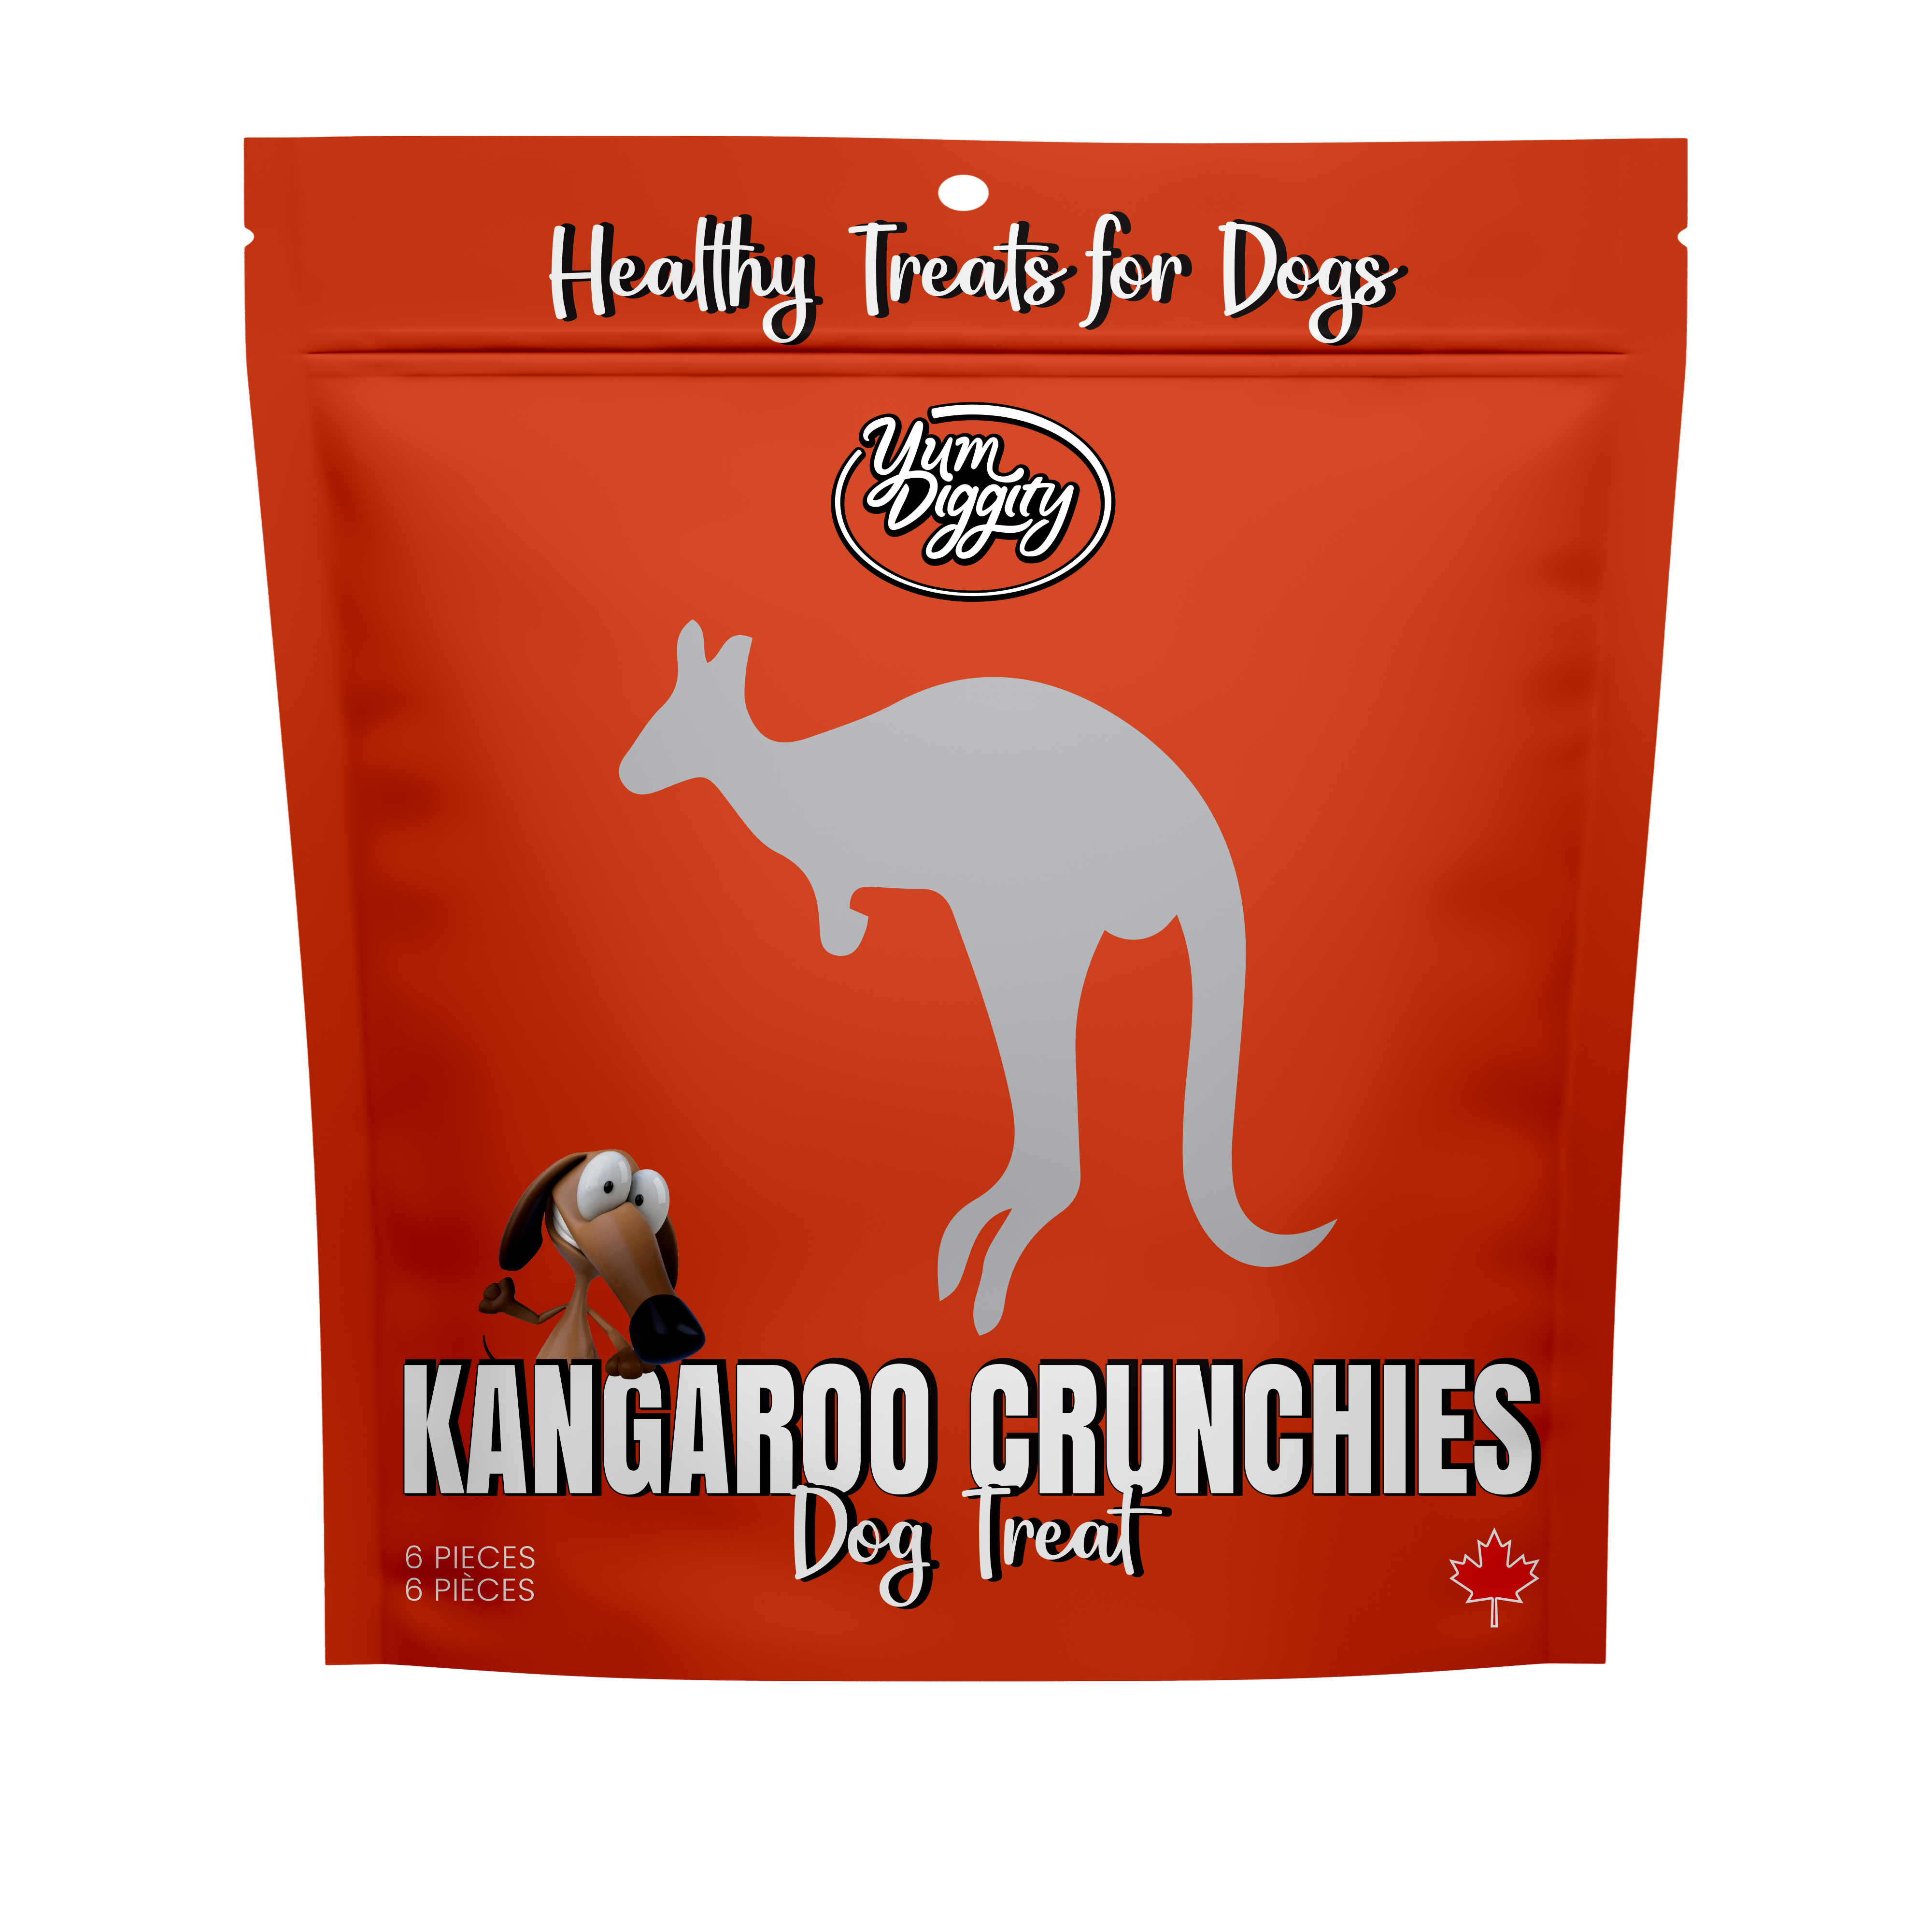 Yum Diggity - Kangaroo "Crunchies" Tail Chunks